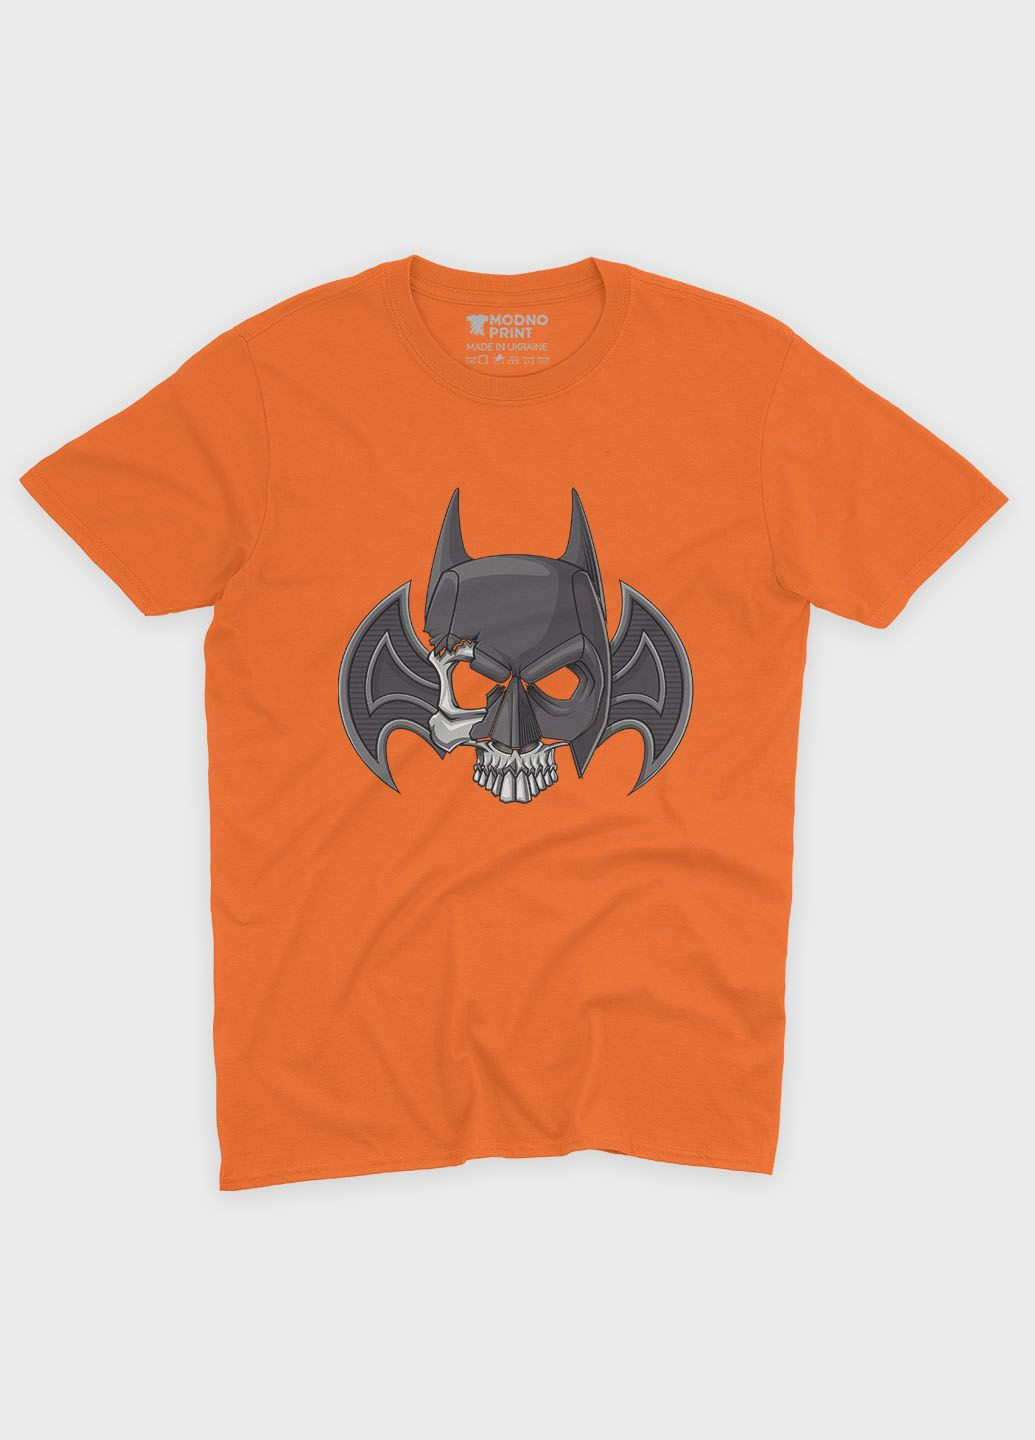 Оранжевая демисезонная футболка для девочки с принтом супергероя - бэтмен (ts001-1-ora-006-003-005-g) Modno